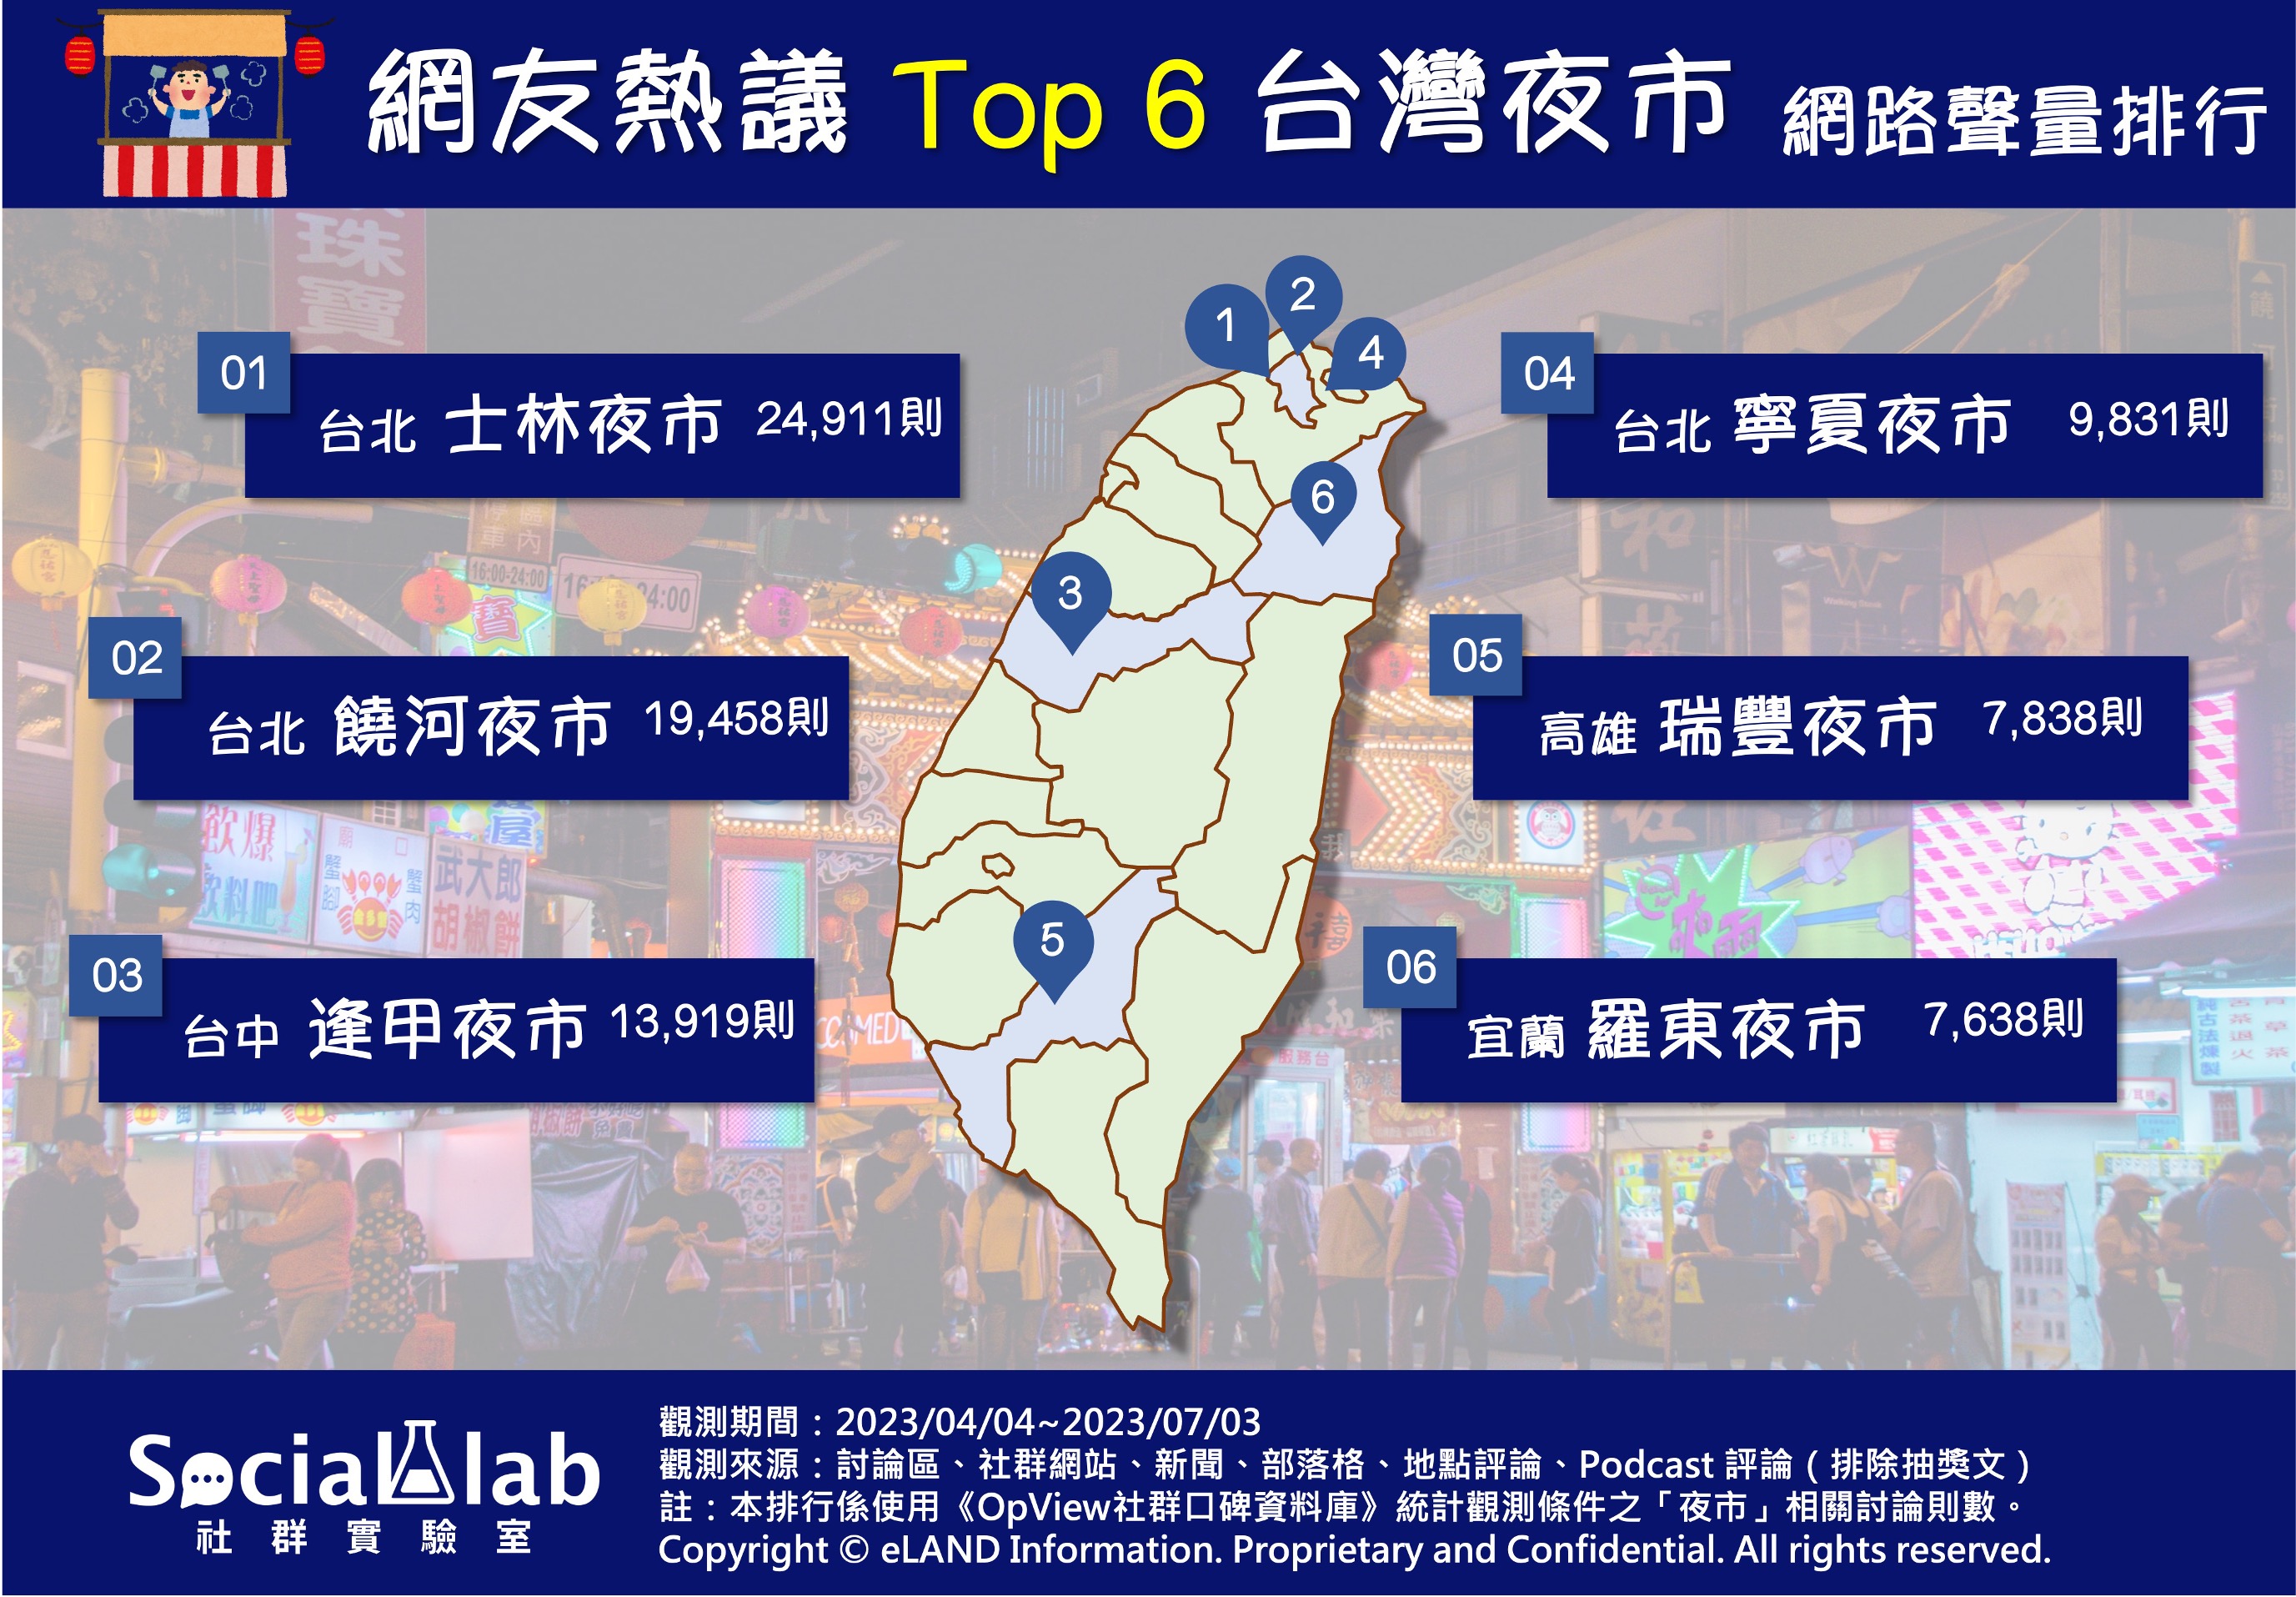 網友熱議TOP6台灣夜市 網路聲量排行